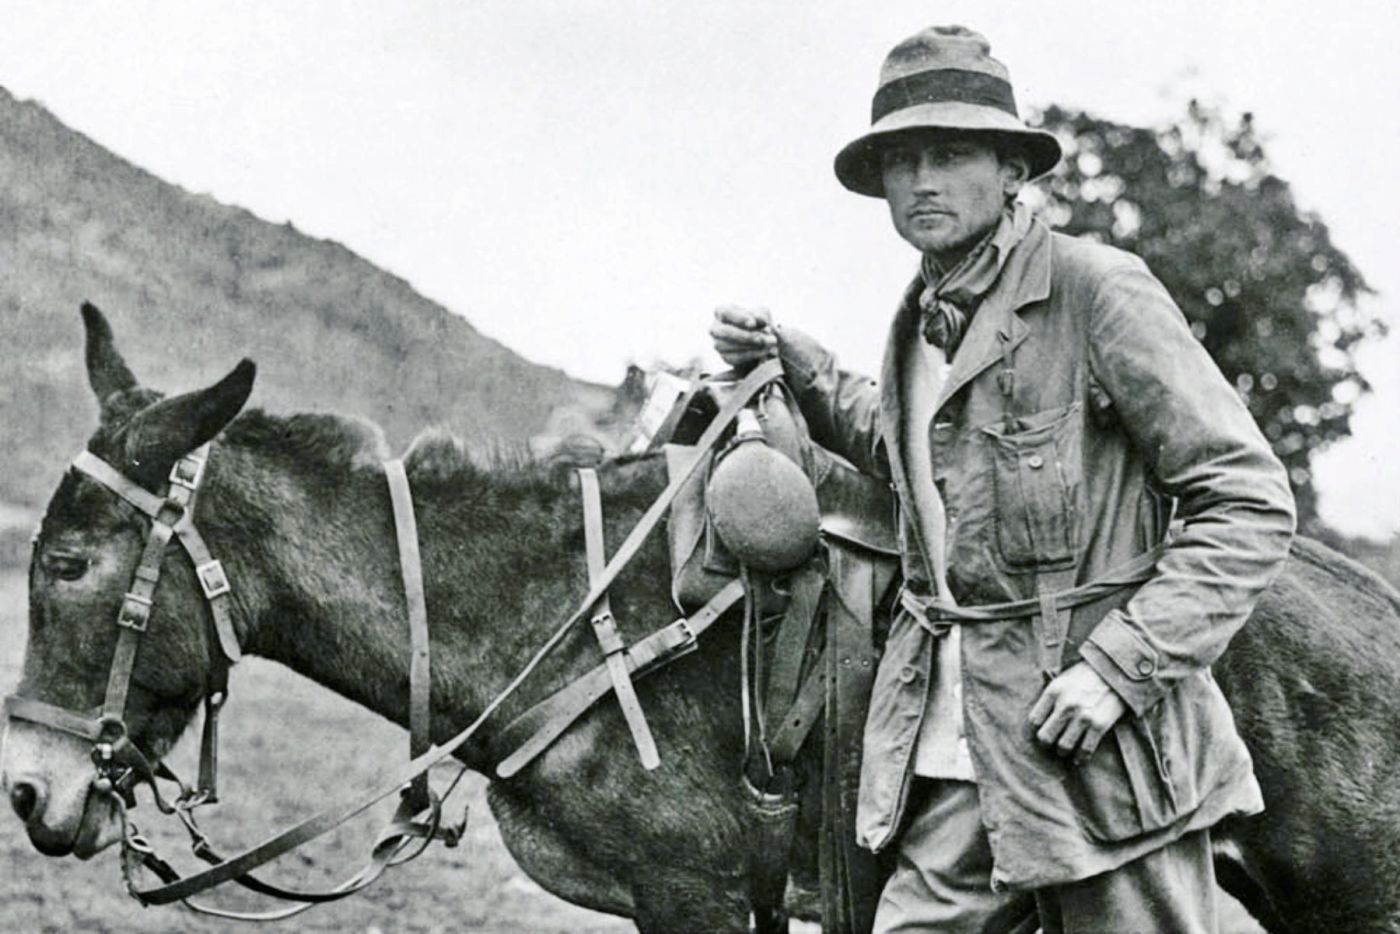 El explorador de Machu Picchu más célebre es Hiram Bingham, pero otros habían llegado antes.